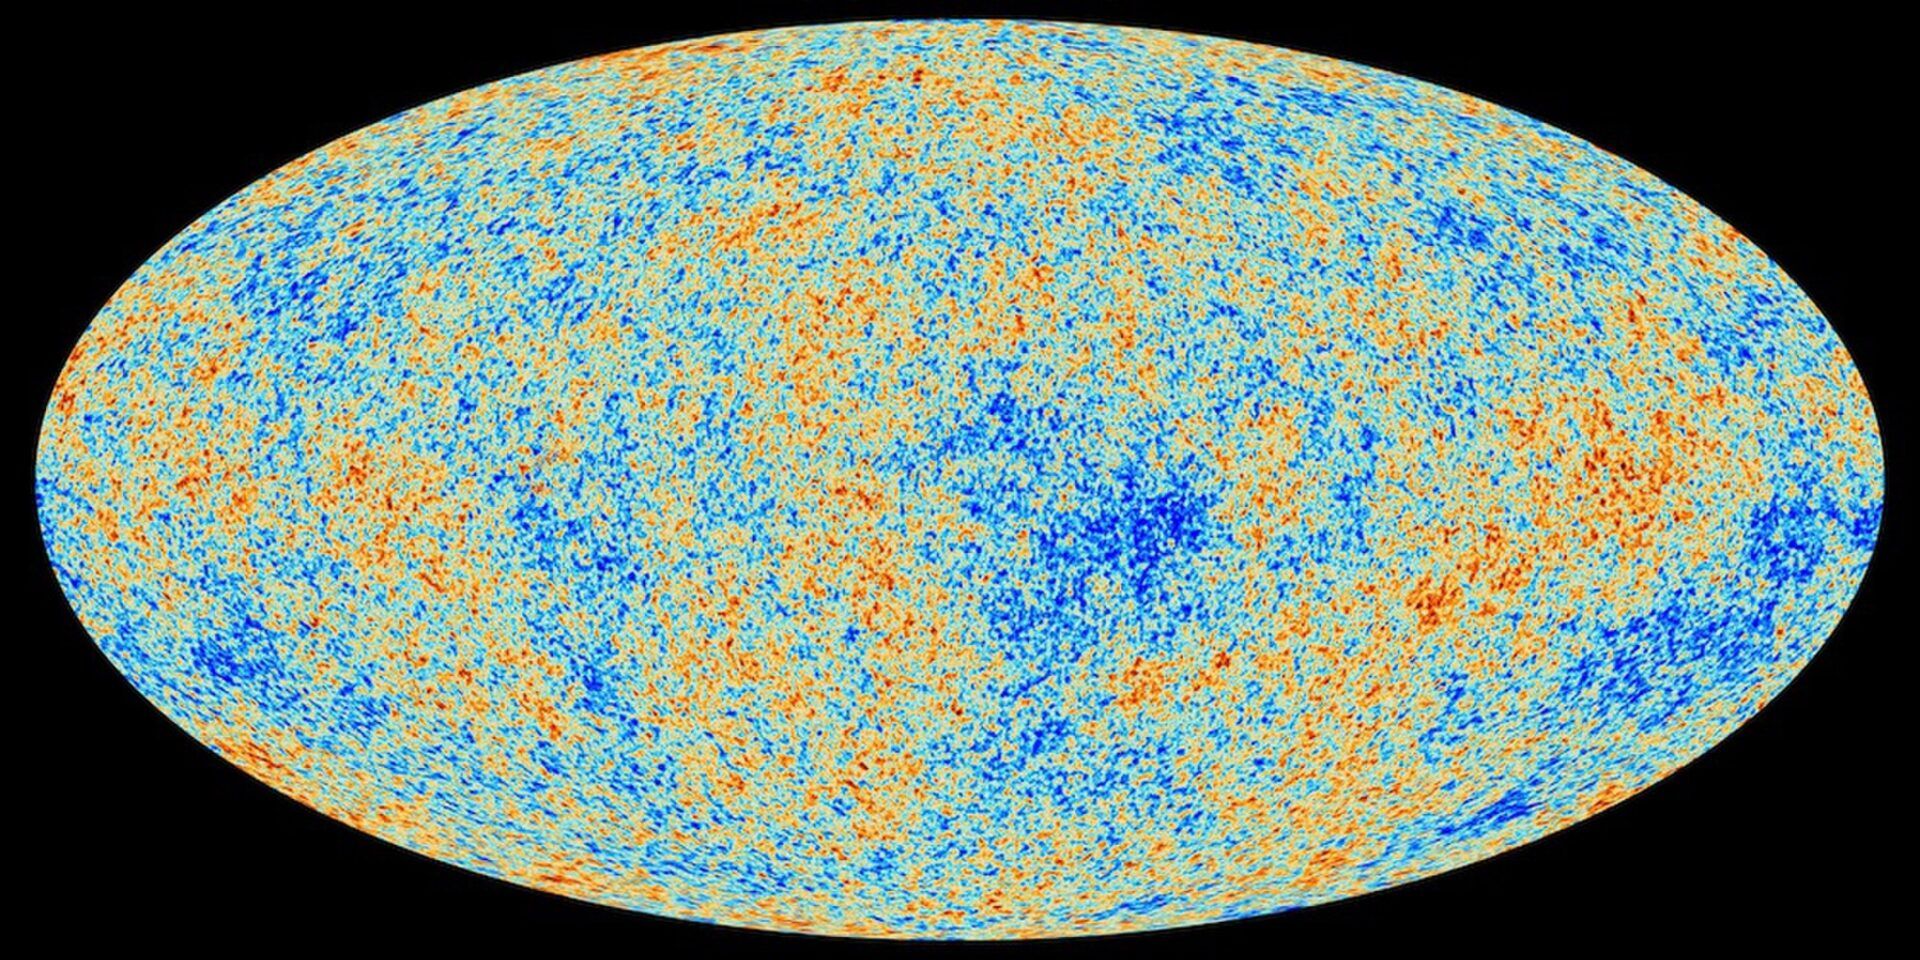 Tamanho do universo - dimensões, forma e expansão cósmica